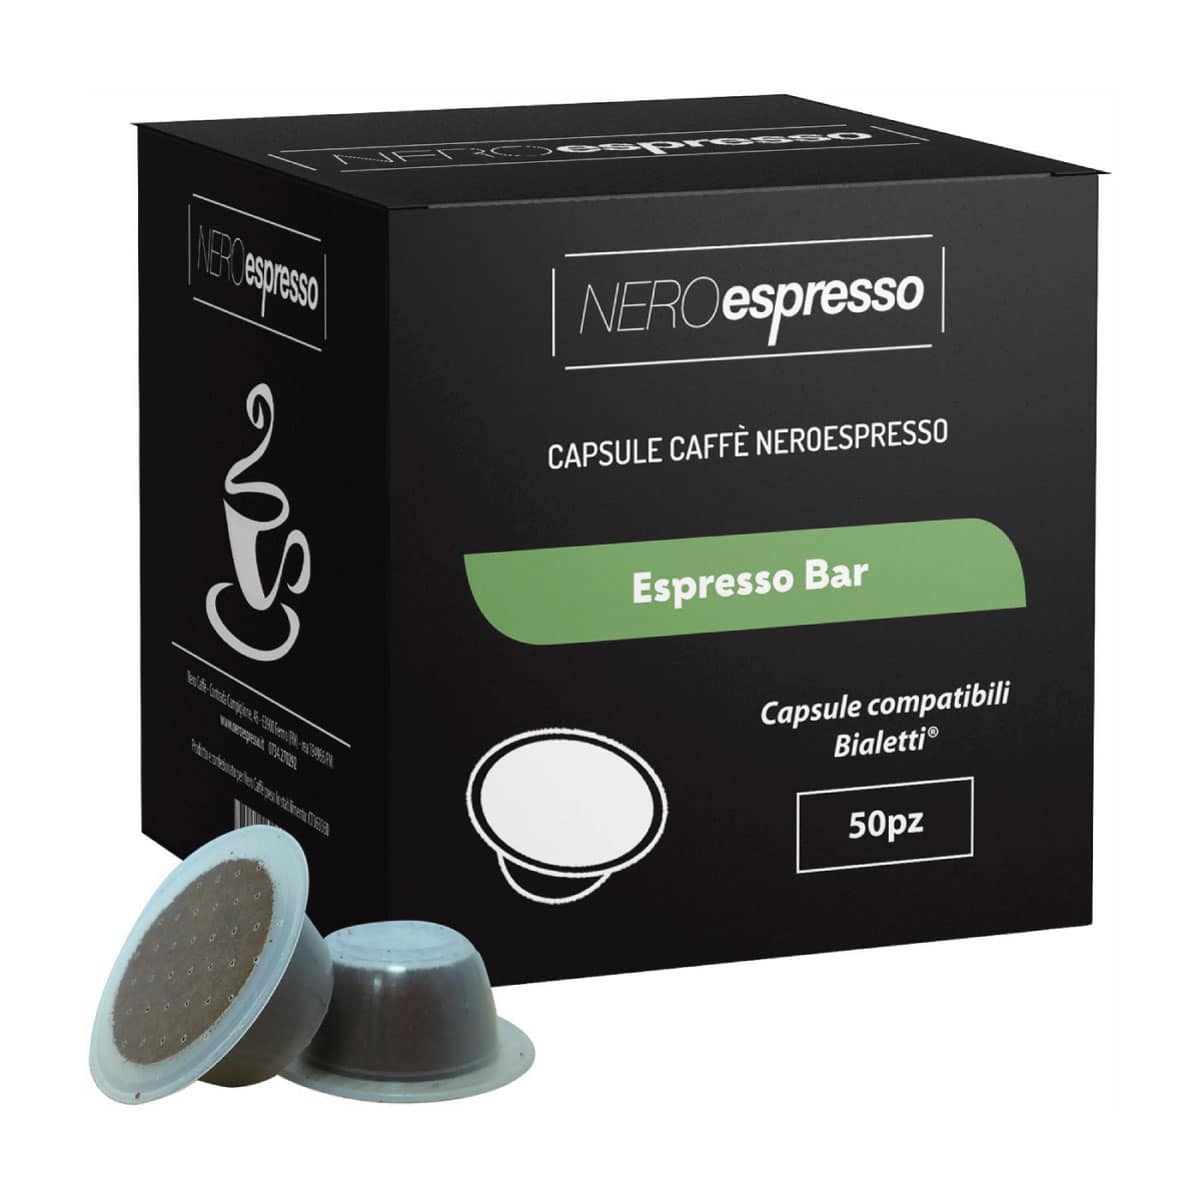 50 Capsule Caffè “Espresso Bar” Compatibili Bialetti - Nero Espresso